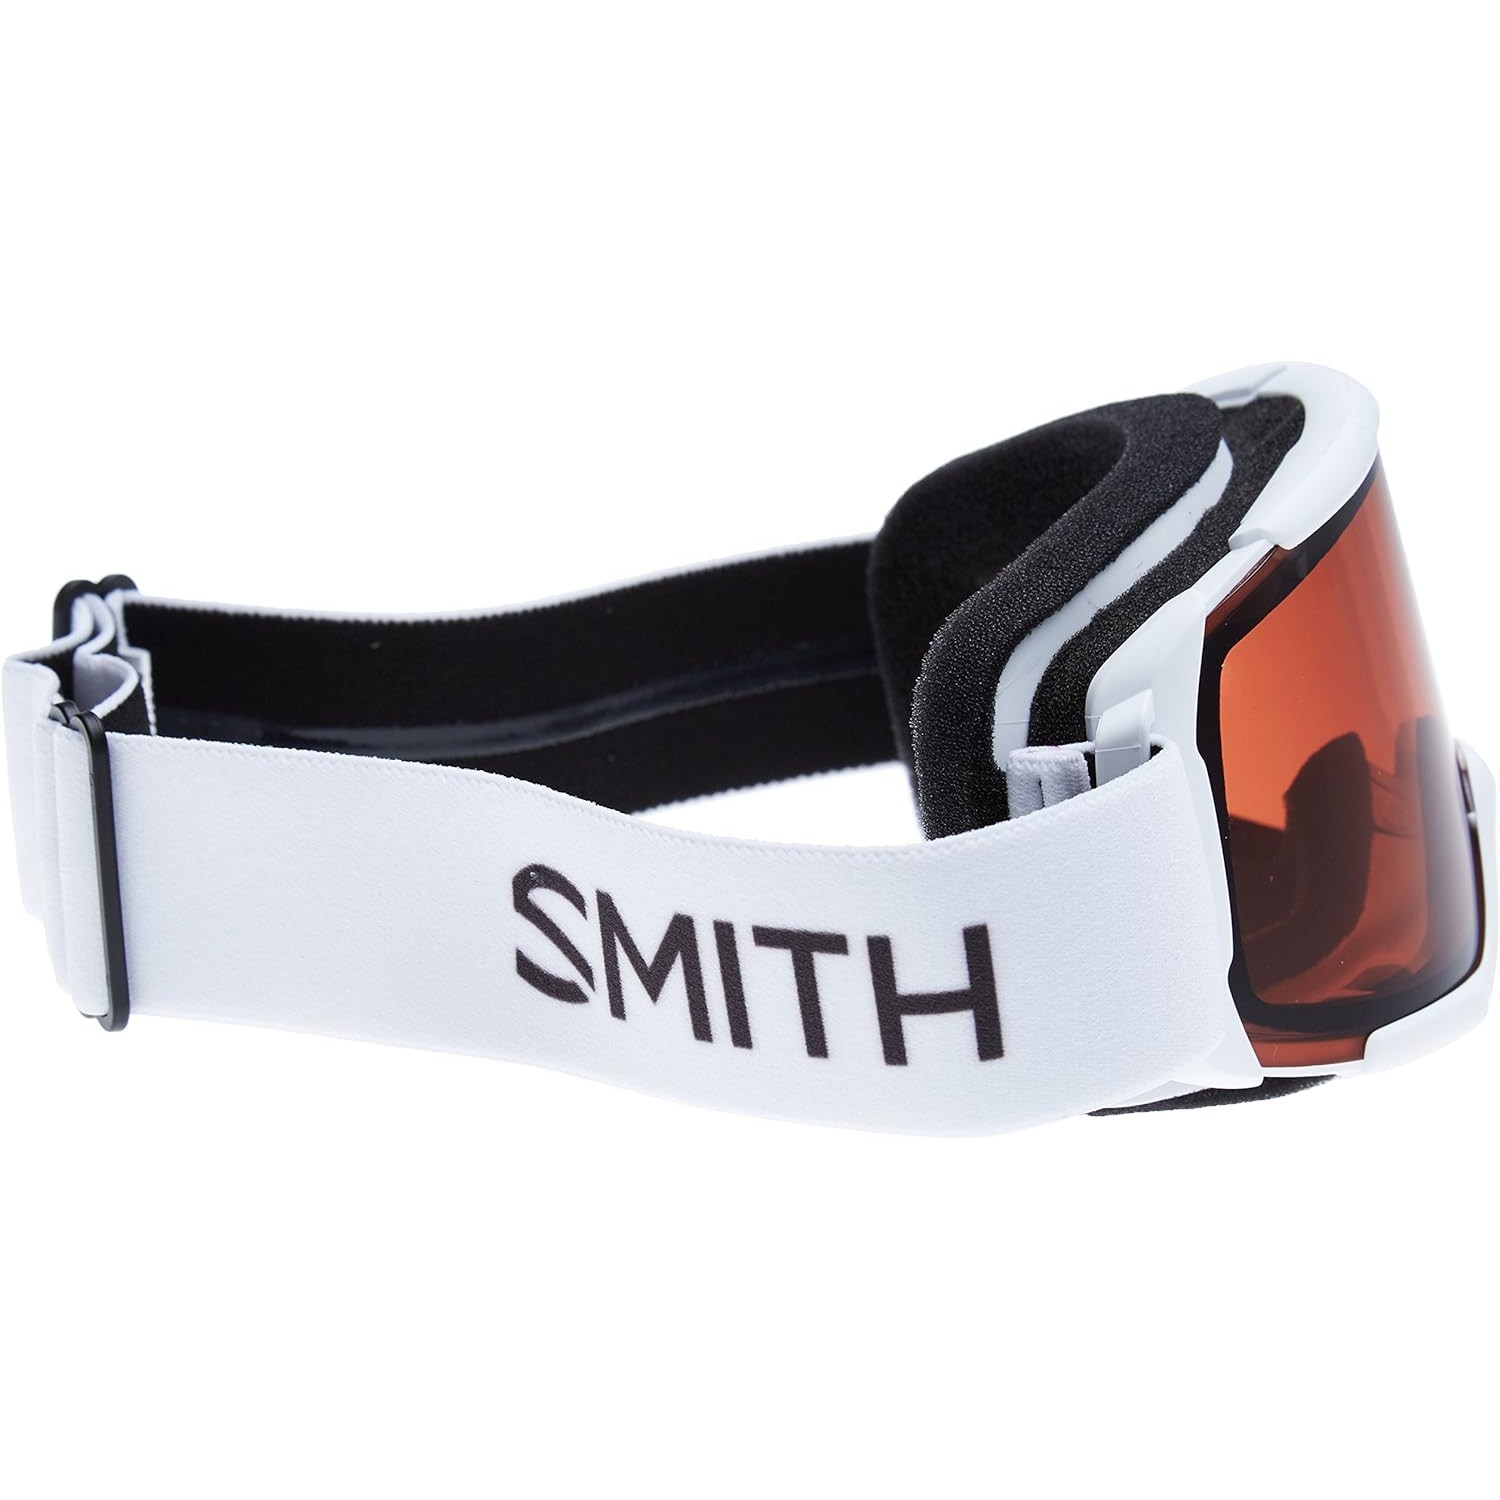 Smith Daredevil Kids' Snowboard/Ski Goggles